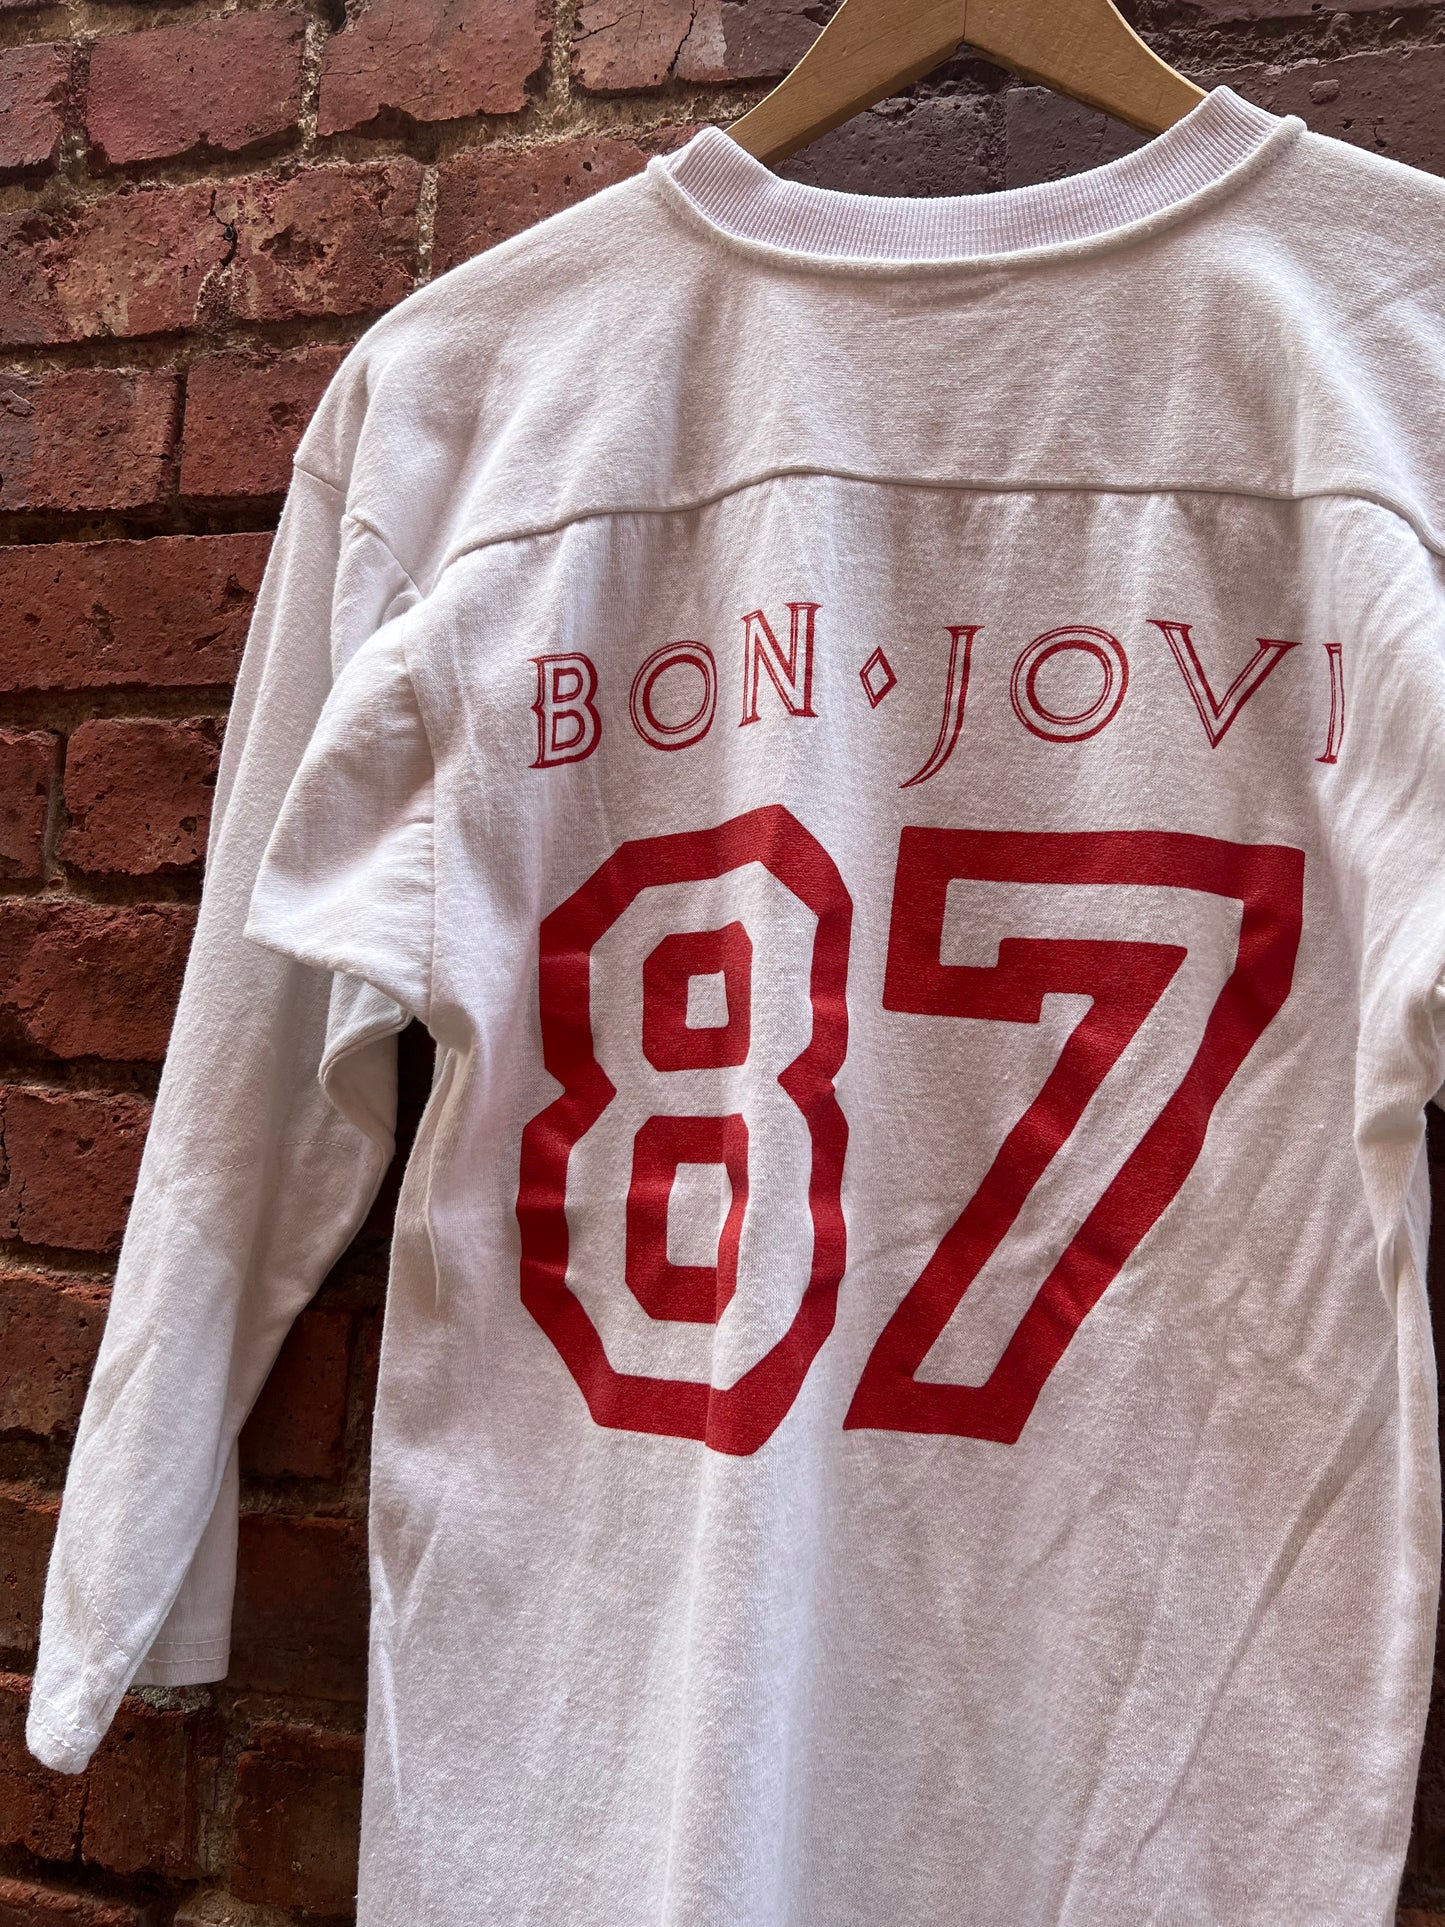 1980s BON JOVI “Crew Member” Vintage Tour Shirt Nassau Coliseum - Size M